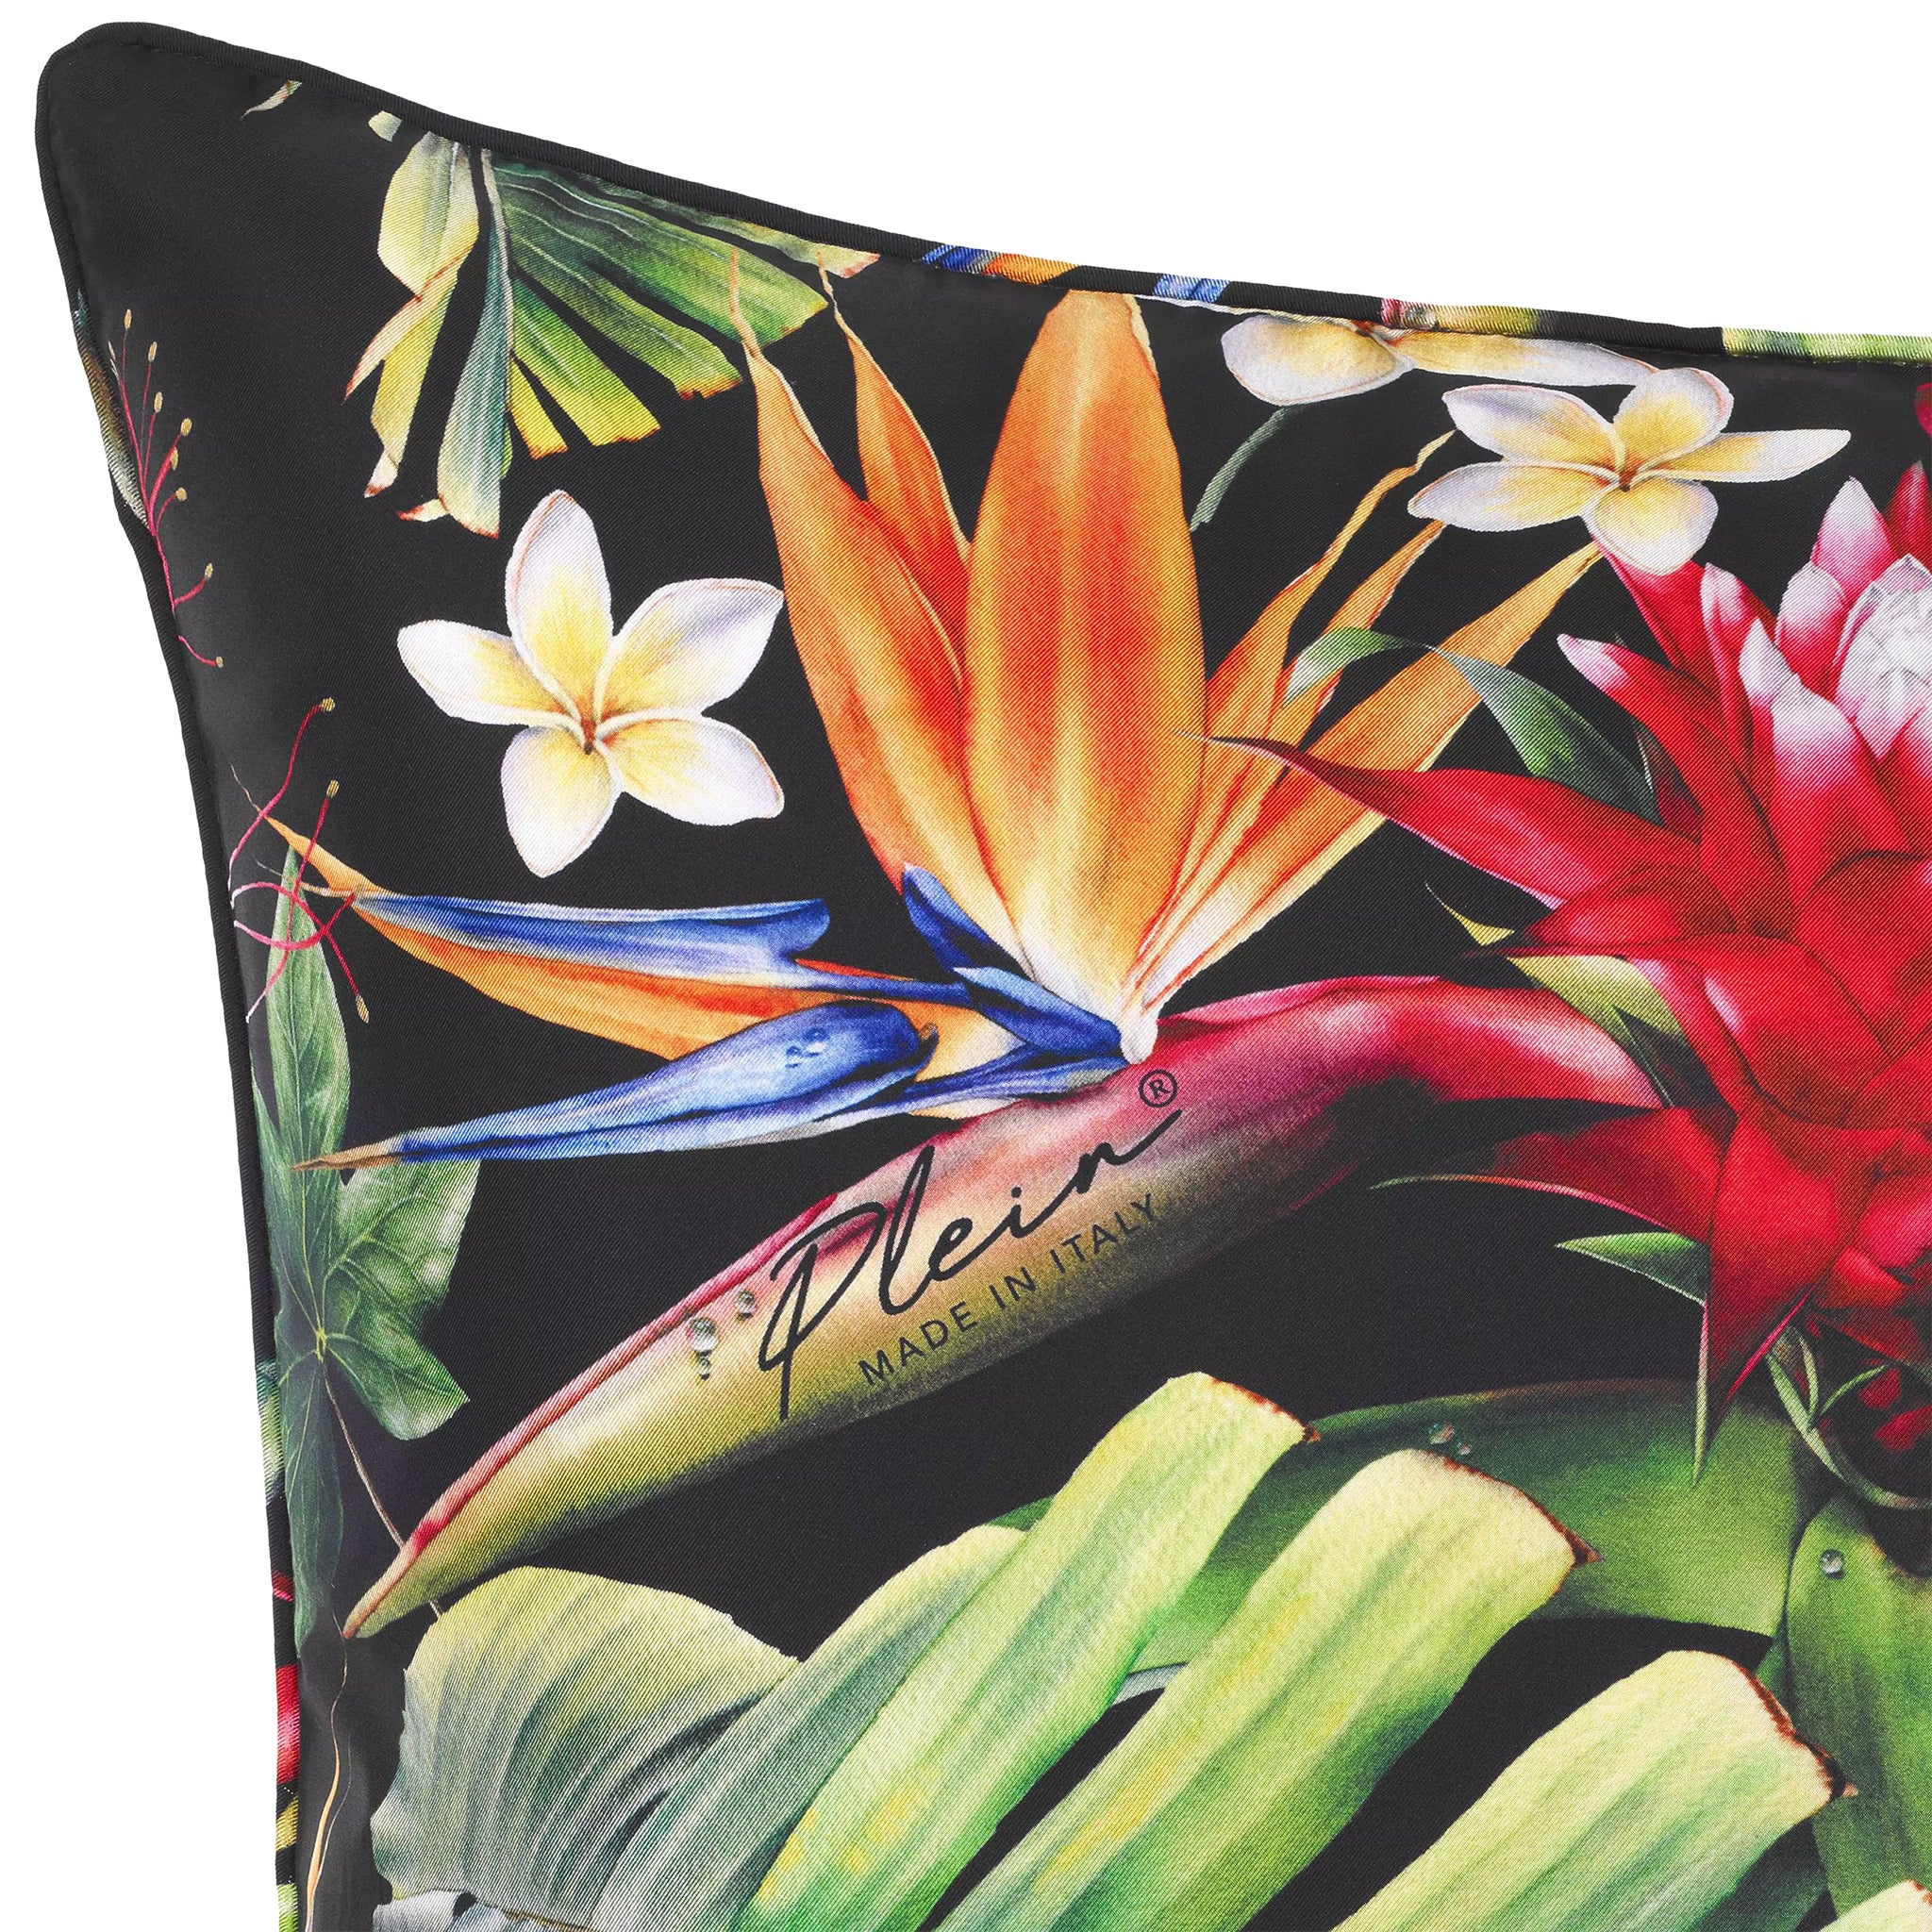 eichholtz cushion silk jungledonna decorative pillows & cushions 